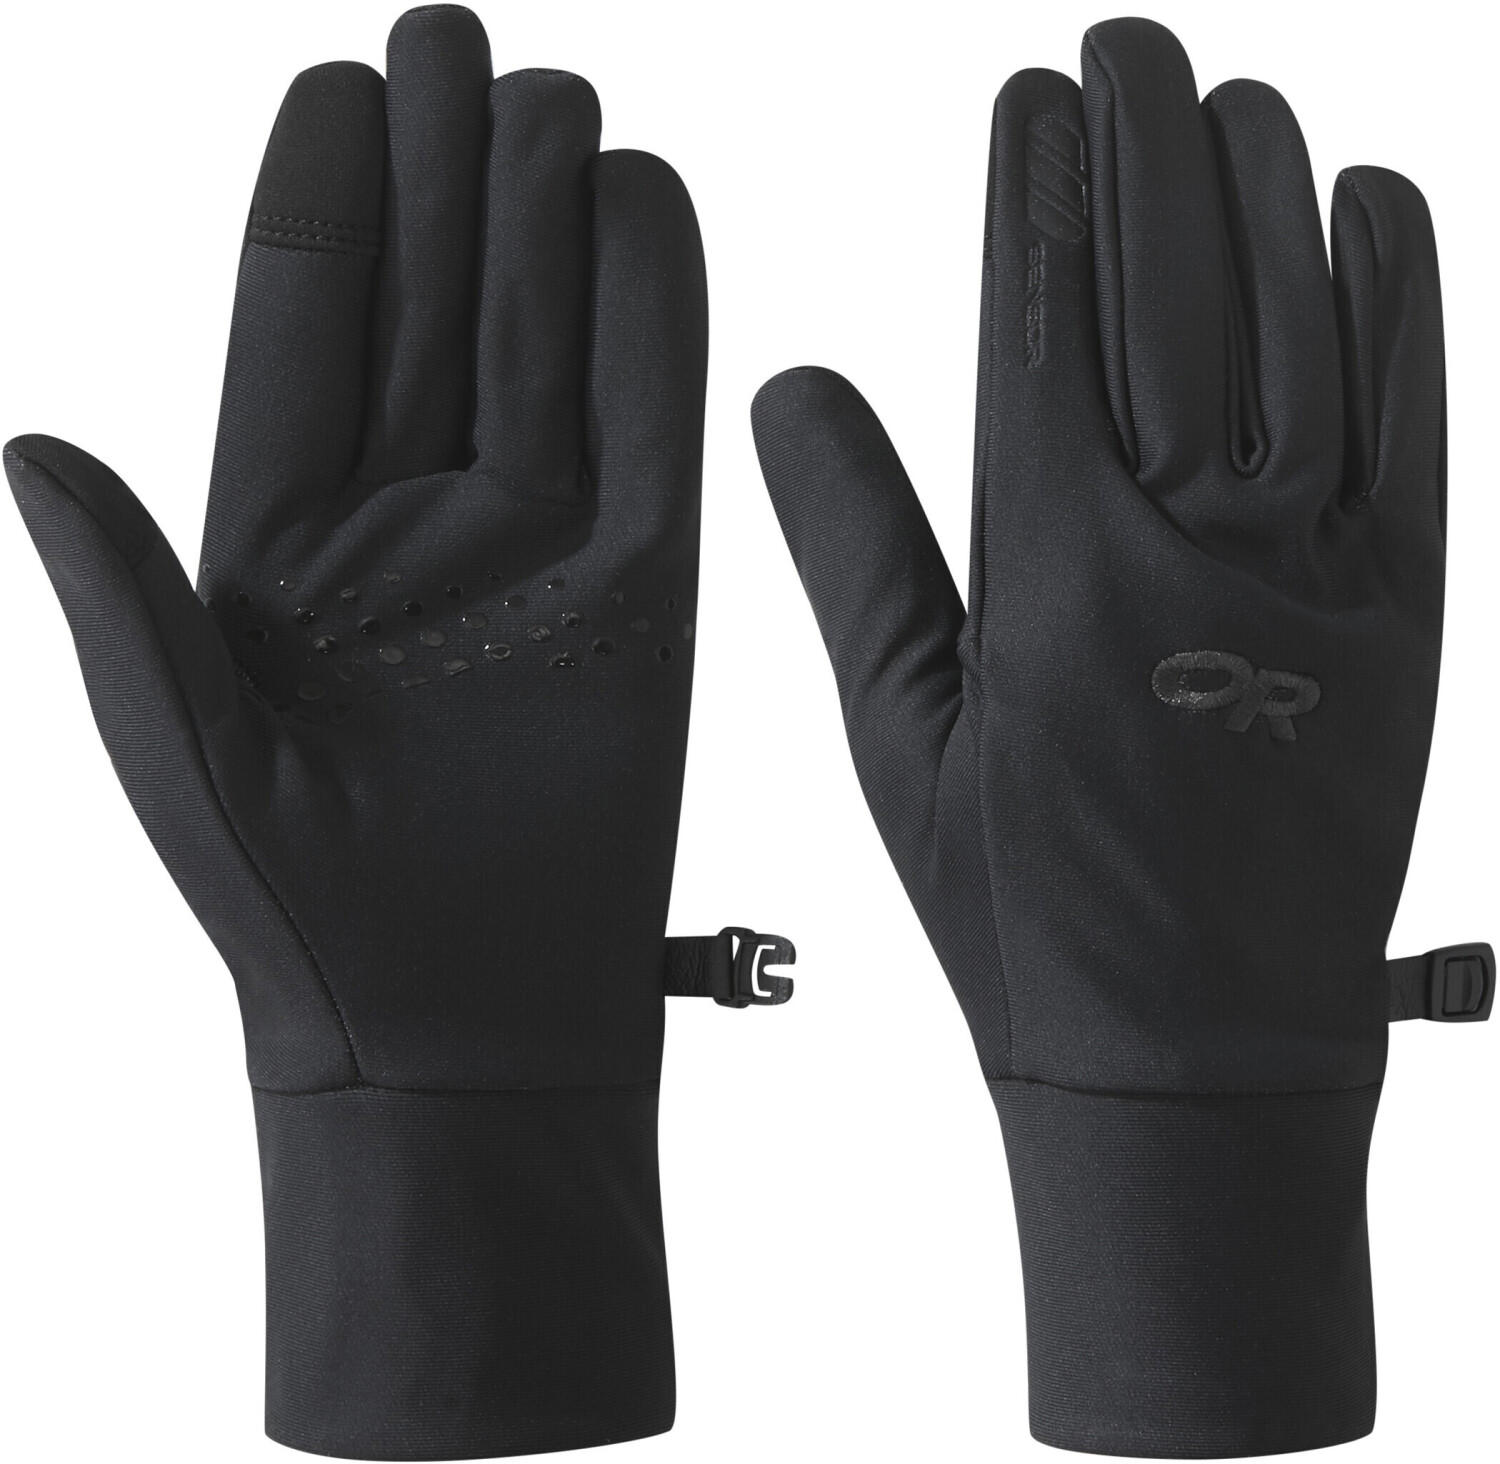 Outdoor Research Women's Versaliner Sensor Gloves black